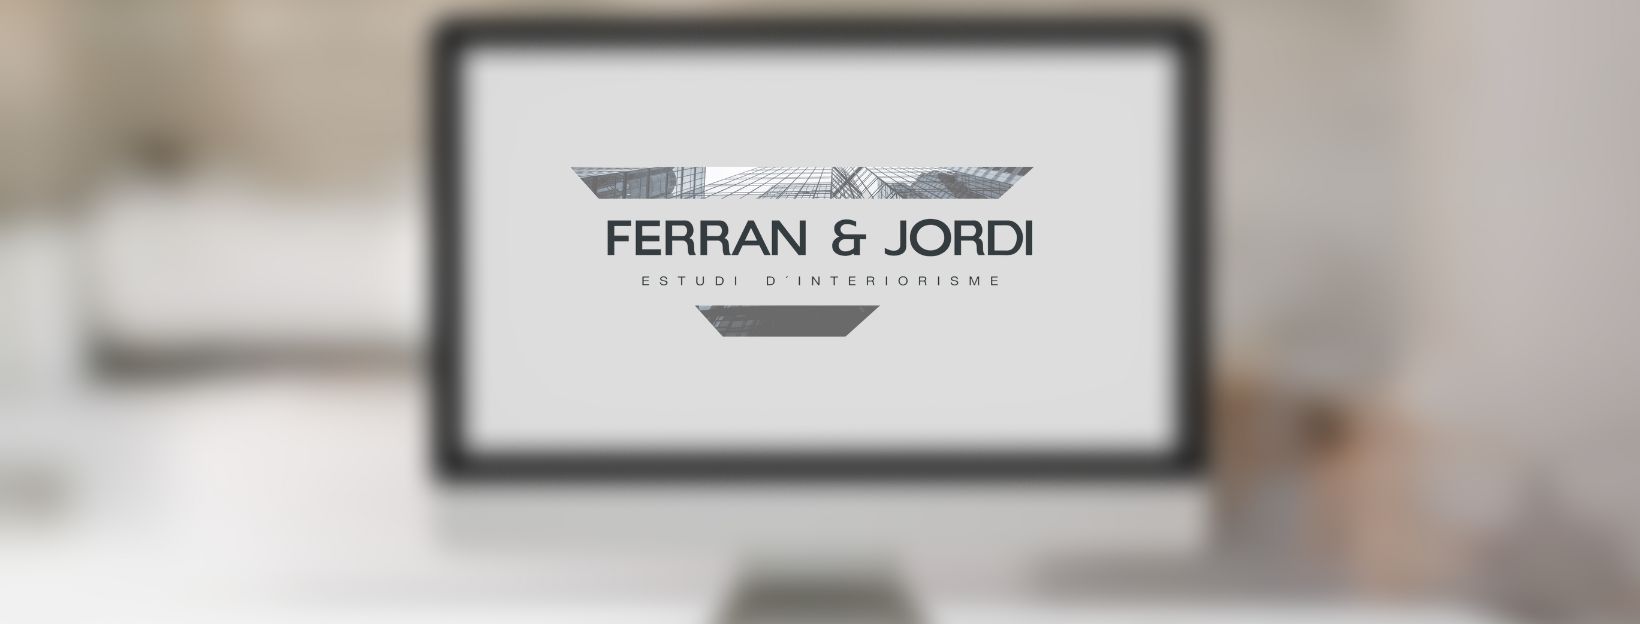 SEO per a la pàgina web de Ferran & Jordi